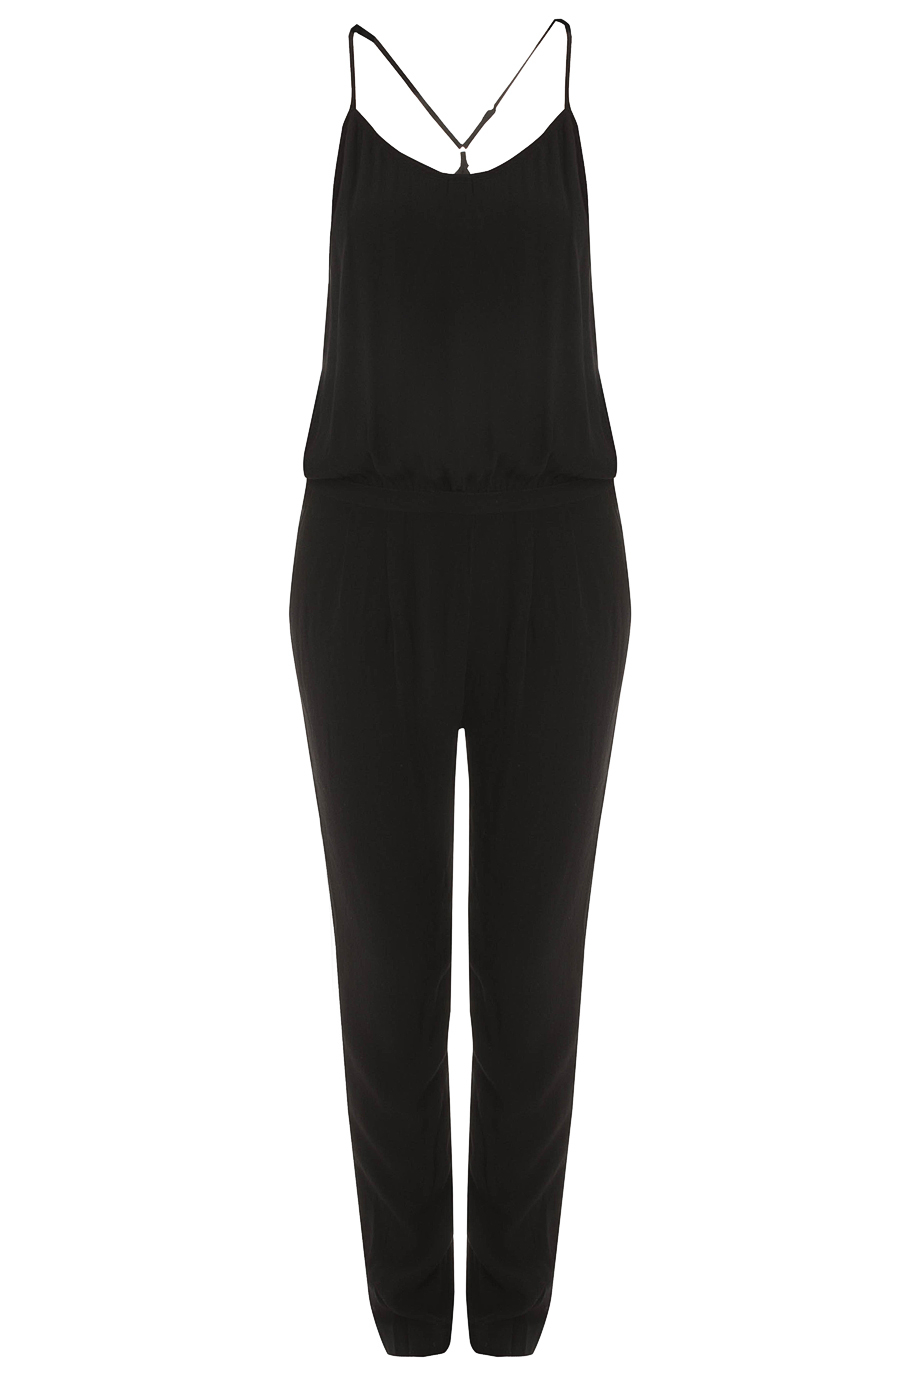 American vintage Crepe Jumpsuit in Black | Lyst